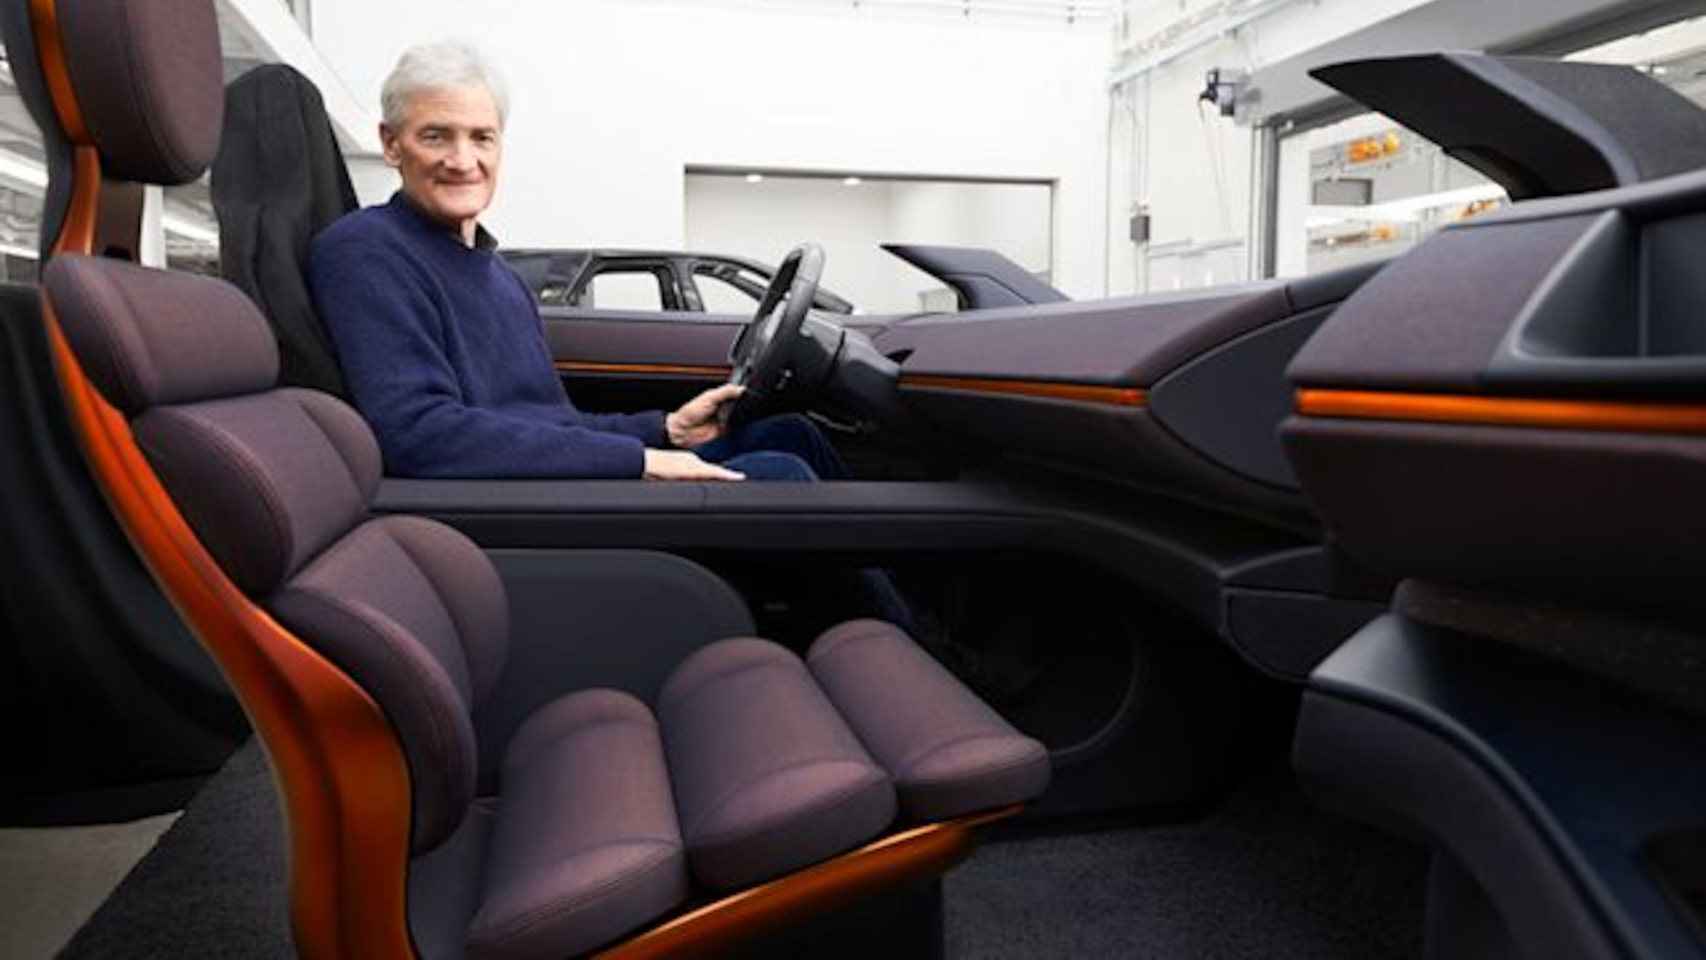 El interior del coche de Dyson iba a contar con mucha tecnología